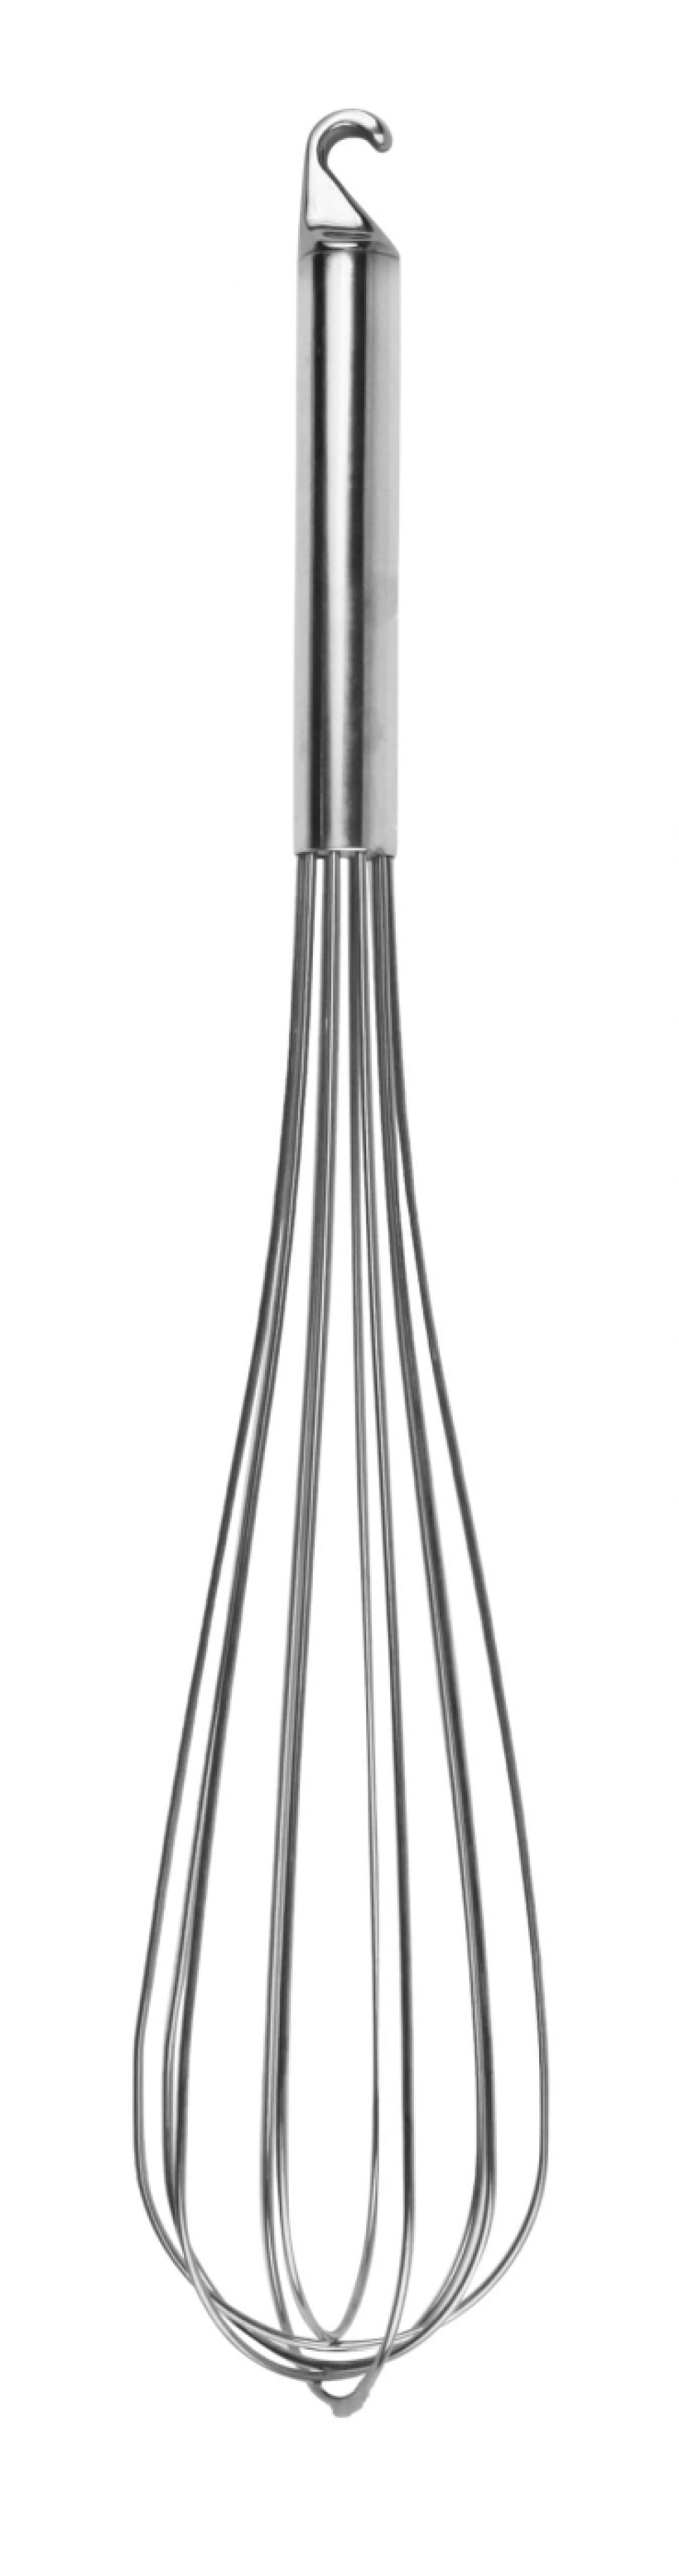 Trzepaczka, 40 cm - Exxent w grupie Gotowanie / Przybory kuchenne / Trzepaczki w The Kitchen Lab (1071-11333)